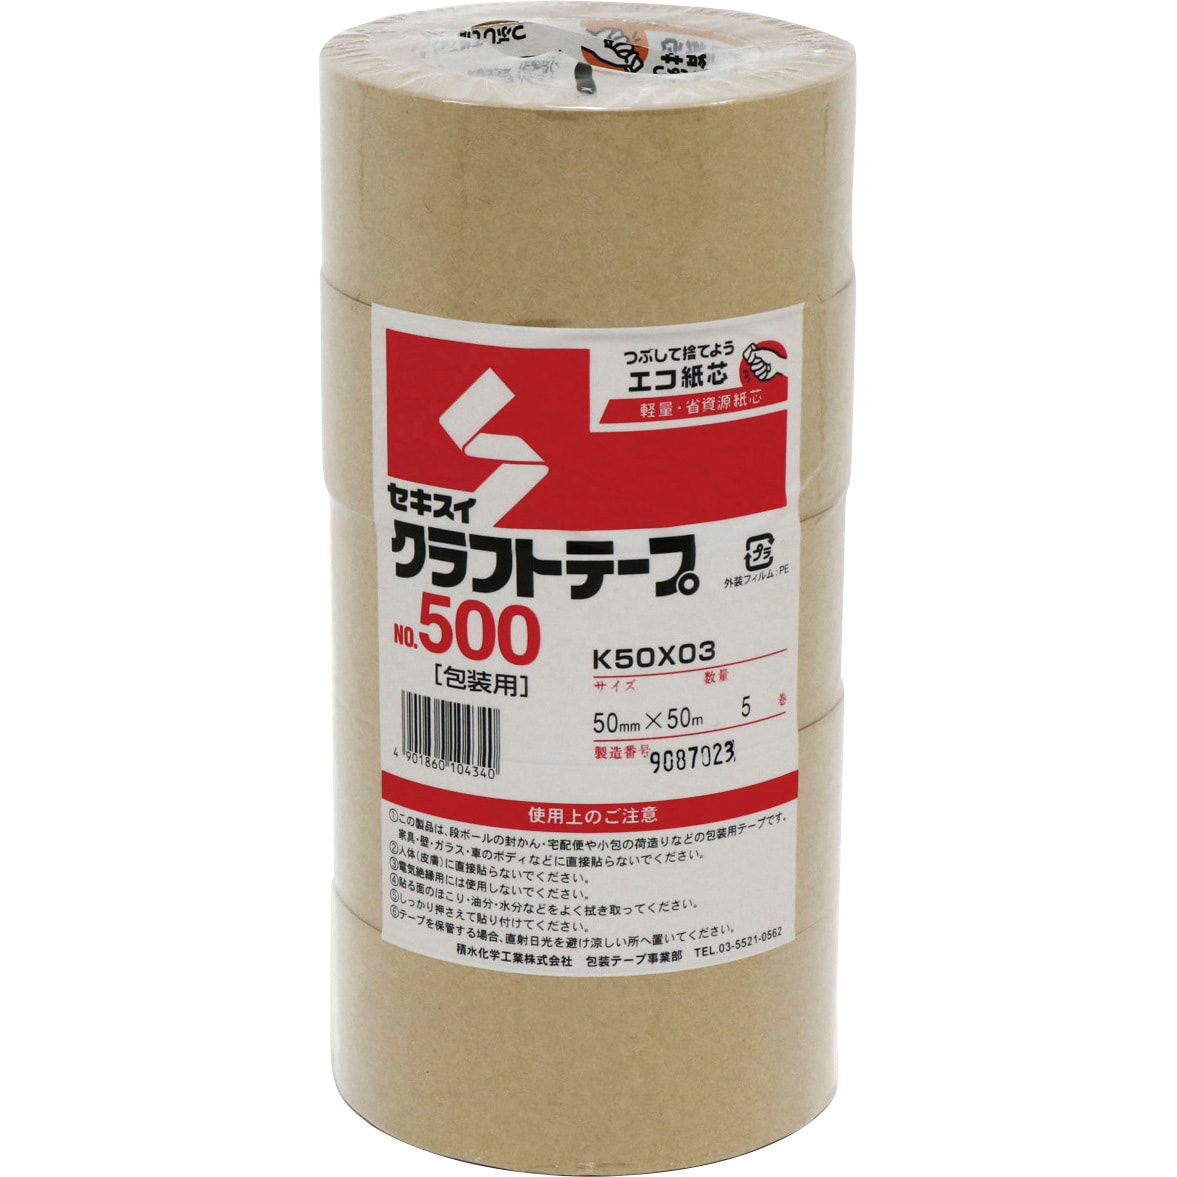 K50X03 クラフトテープ No.500 1パック(5巻) セキスイ 【通販サイト 